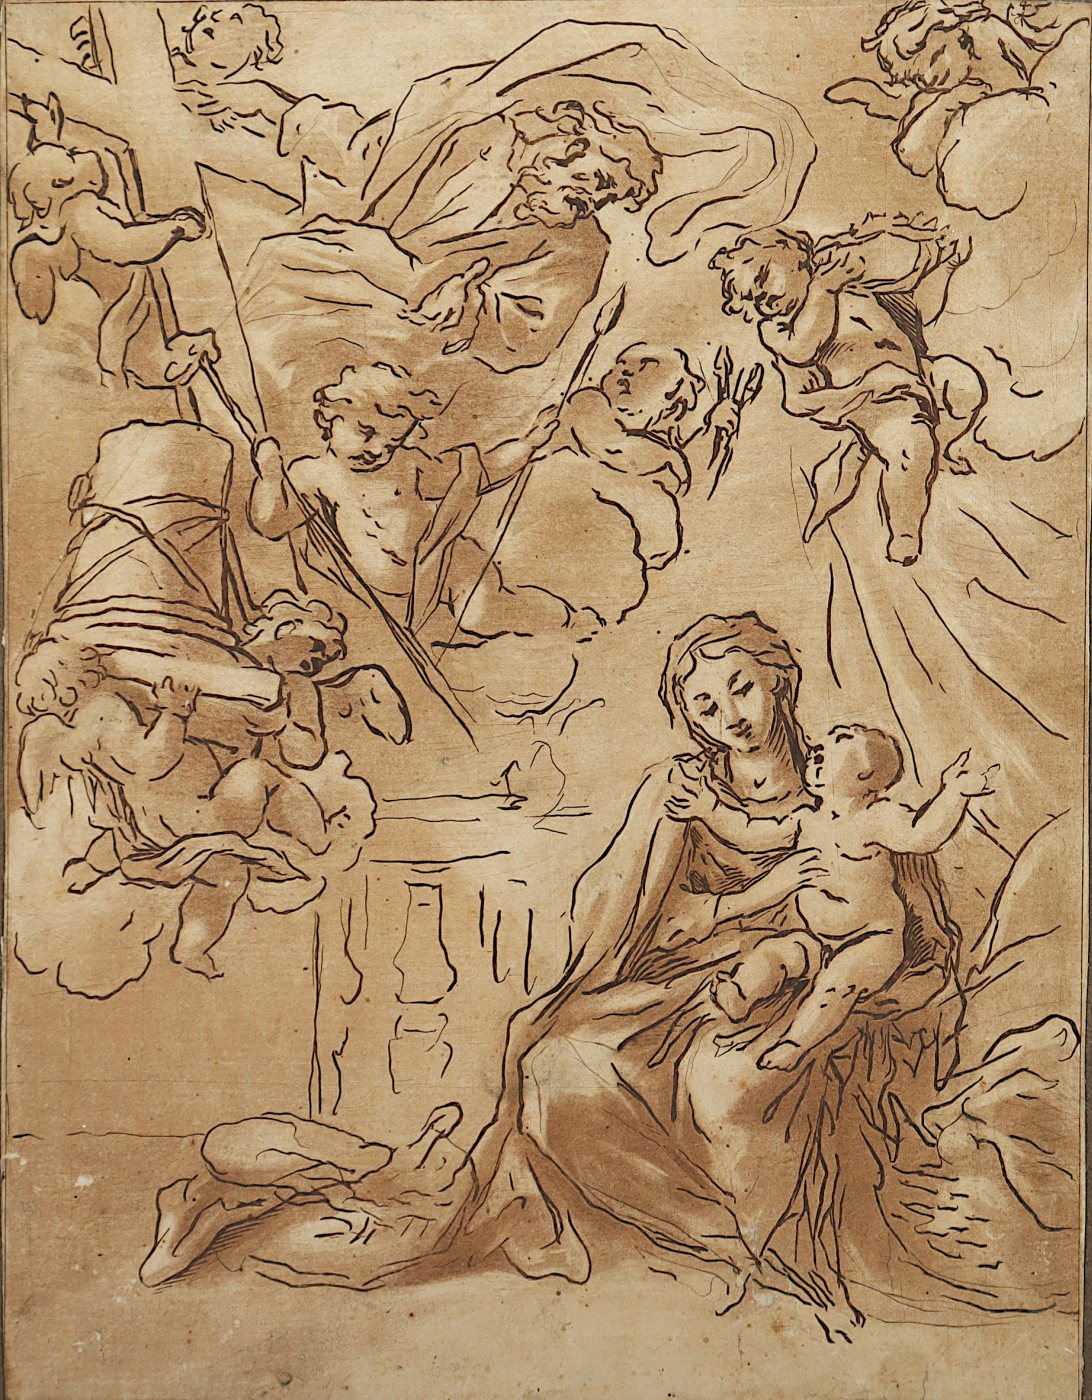 FUMIAMI, Giovanni Antonio (1643-1710), zugeschrieben, "Muttergottes mit Kind, Gottvater und